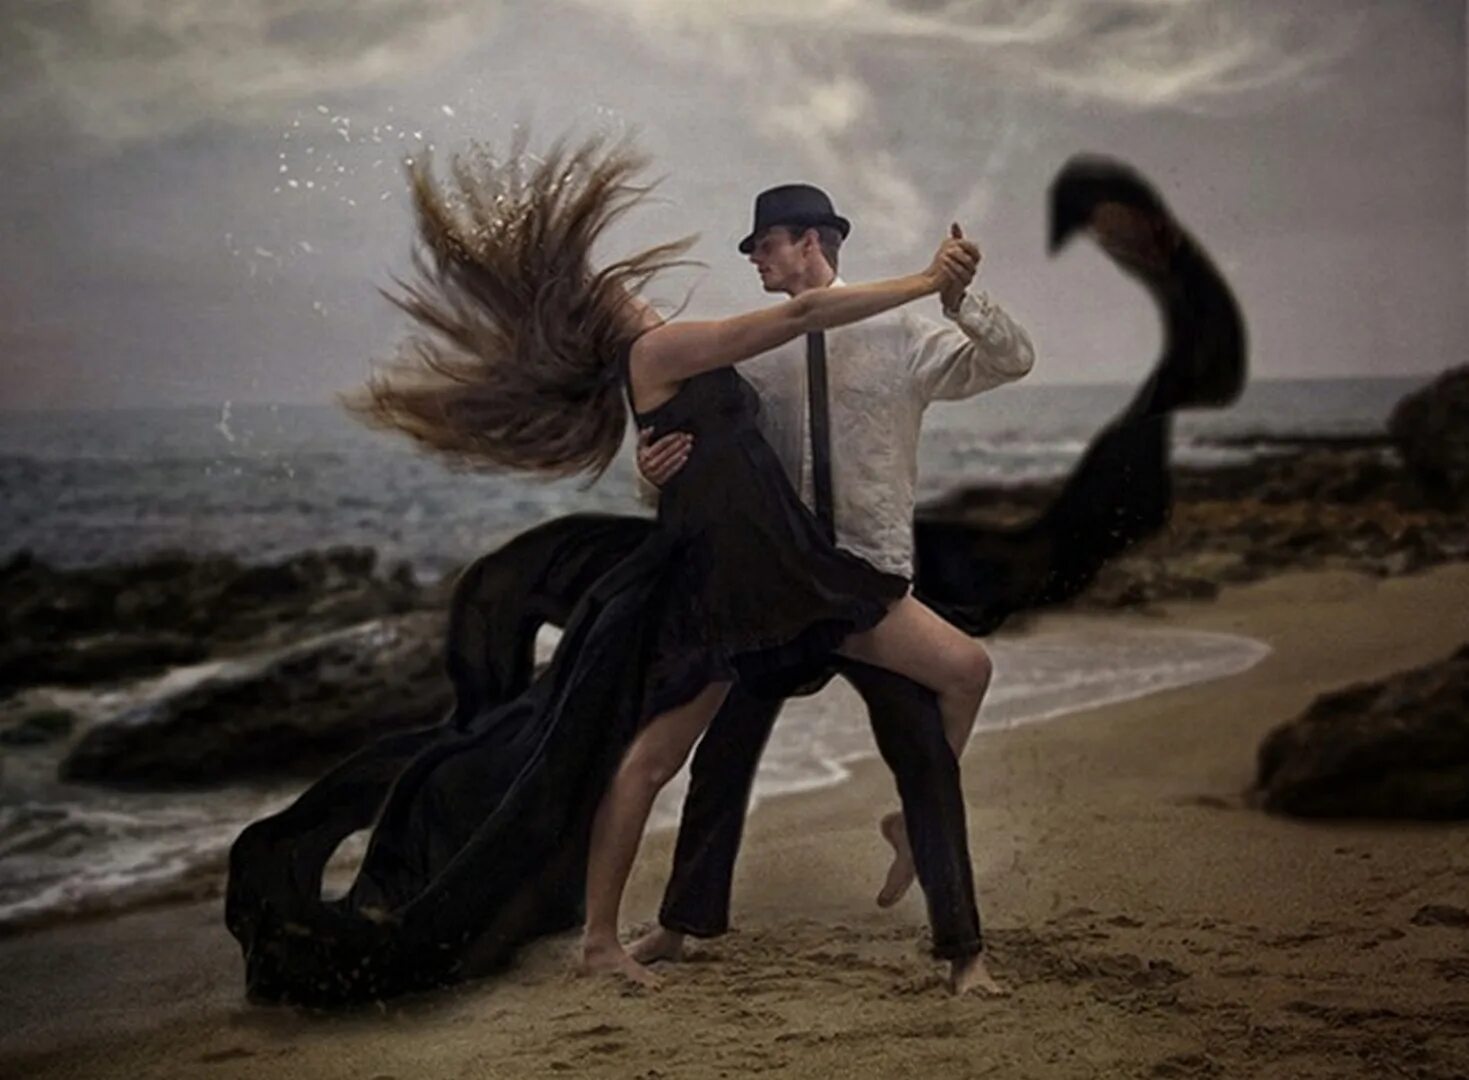 Песня потанцуем в диком танце. Танец мужчины и женщины. Танцы для влюбленных. Влюбленные в танце. Двое танцуют.